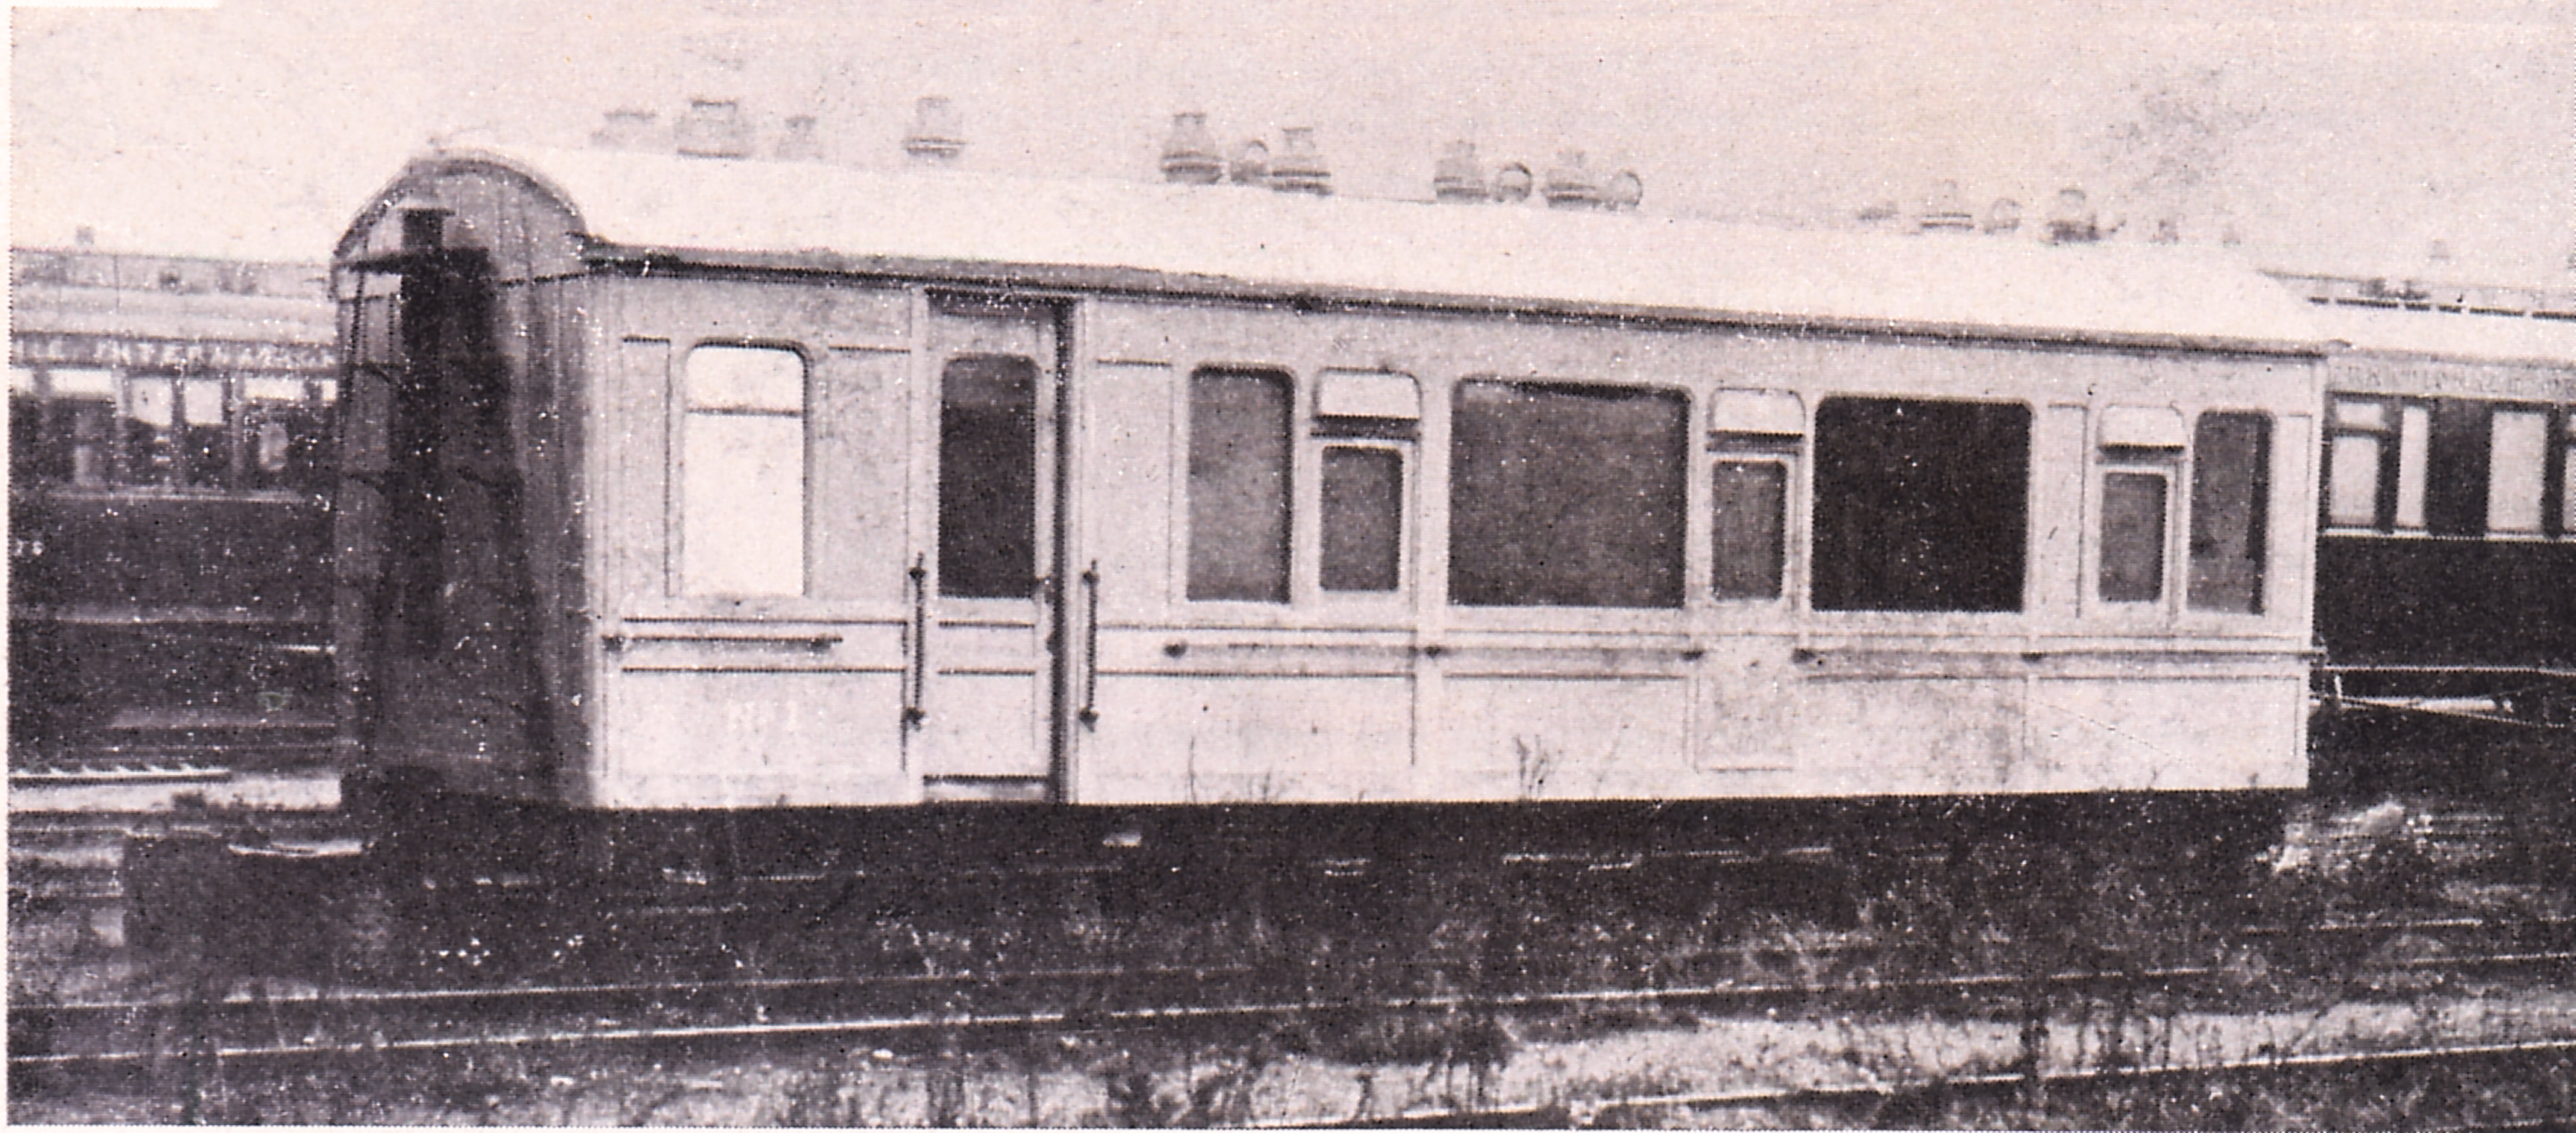 REPRO DECO PHOTO GARE DE TOULON WAGONS TRAIN 1861 RAILS FRANCE   190 OU 310 GRS